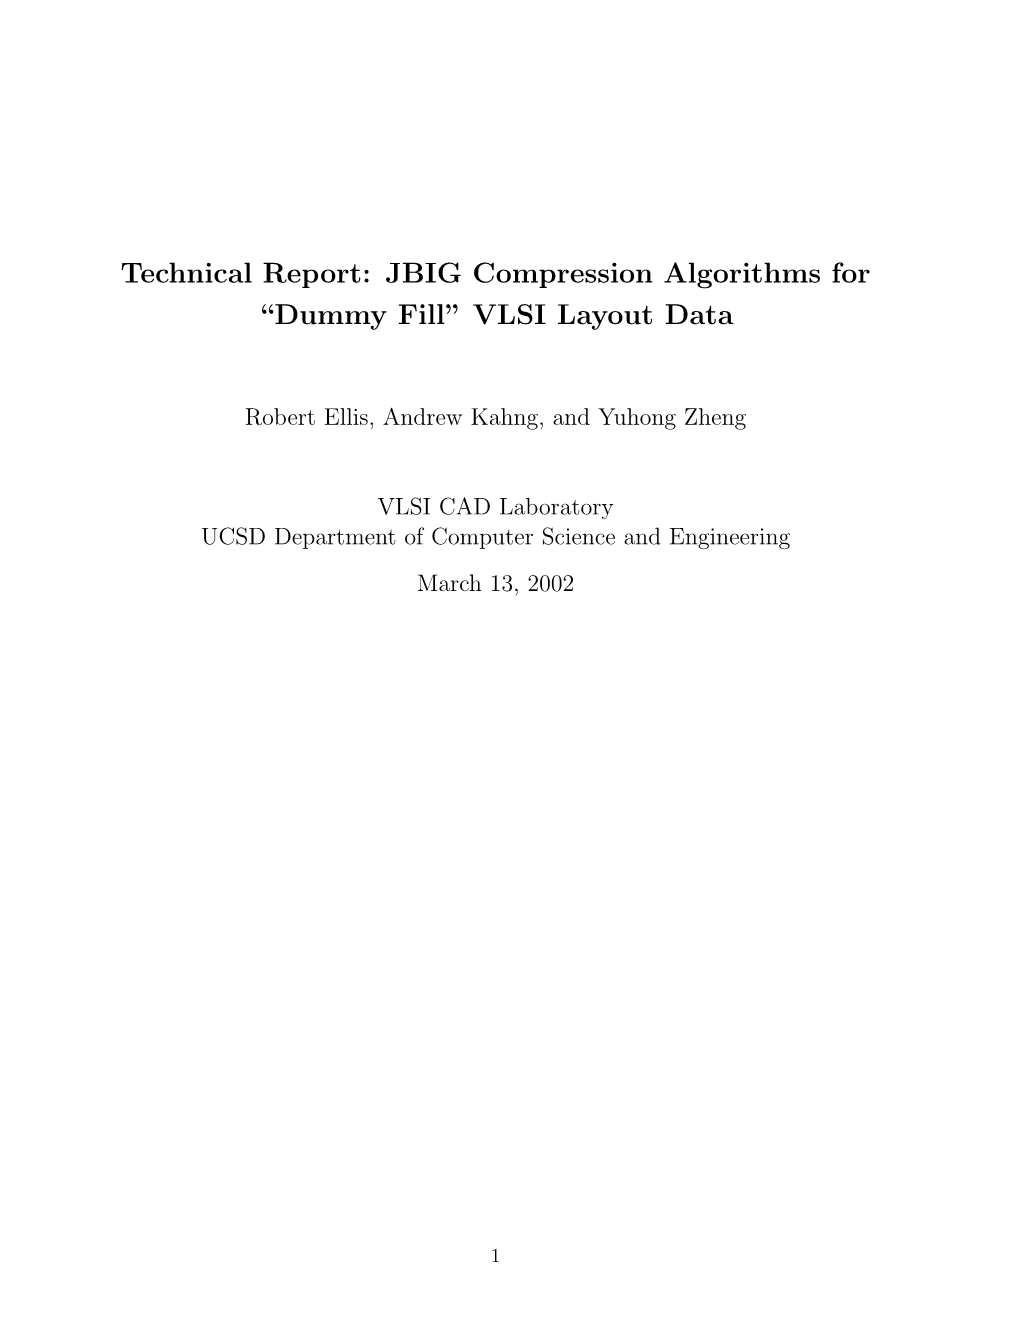 JBIG Compression Algorithms for “Dummy Fill” VLSI Layout Data